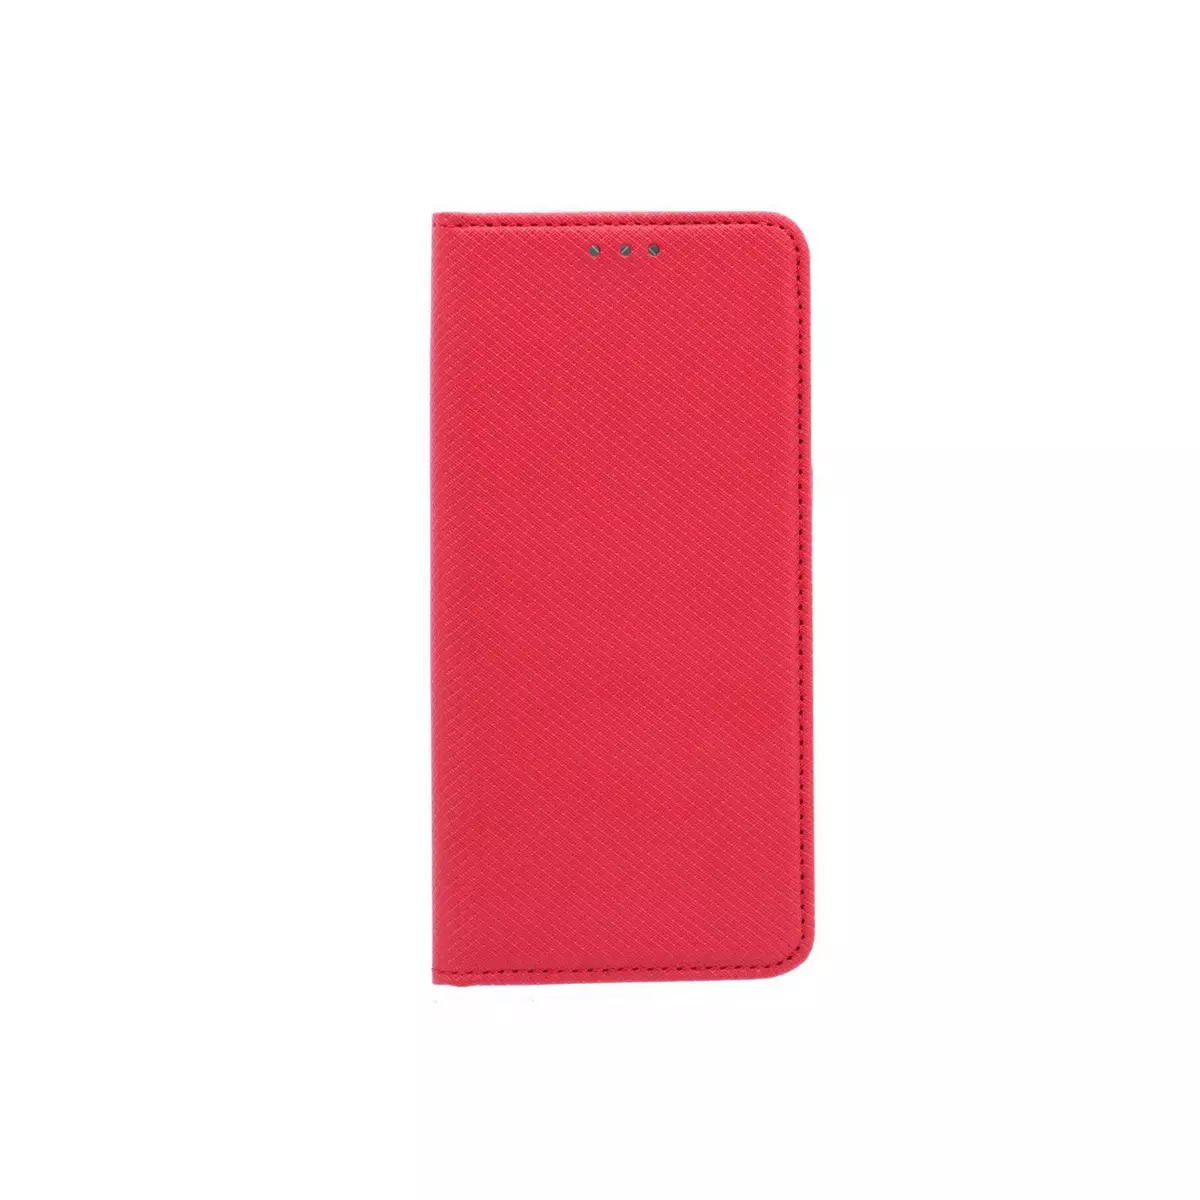 amahousse Housse rouge Galaxy S7 Edge folio texturé rabat aimanté